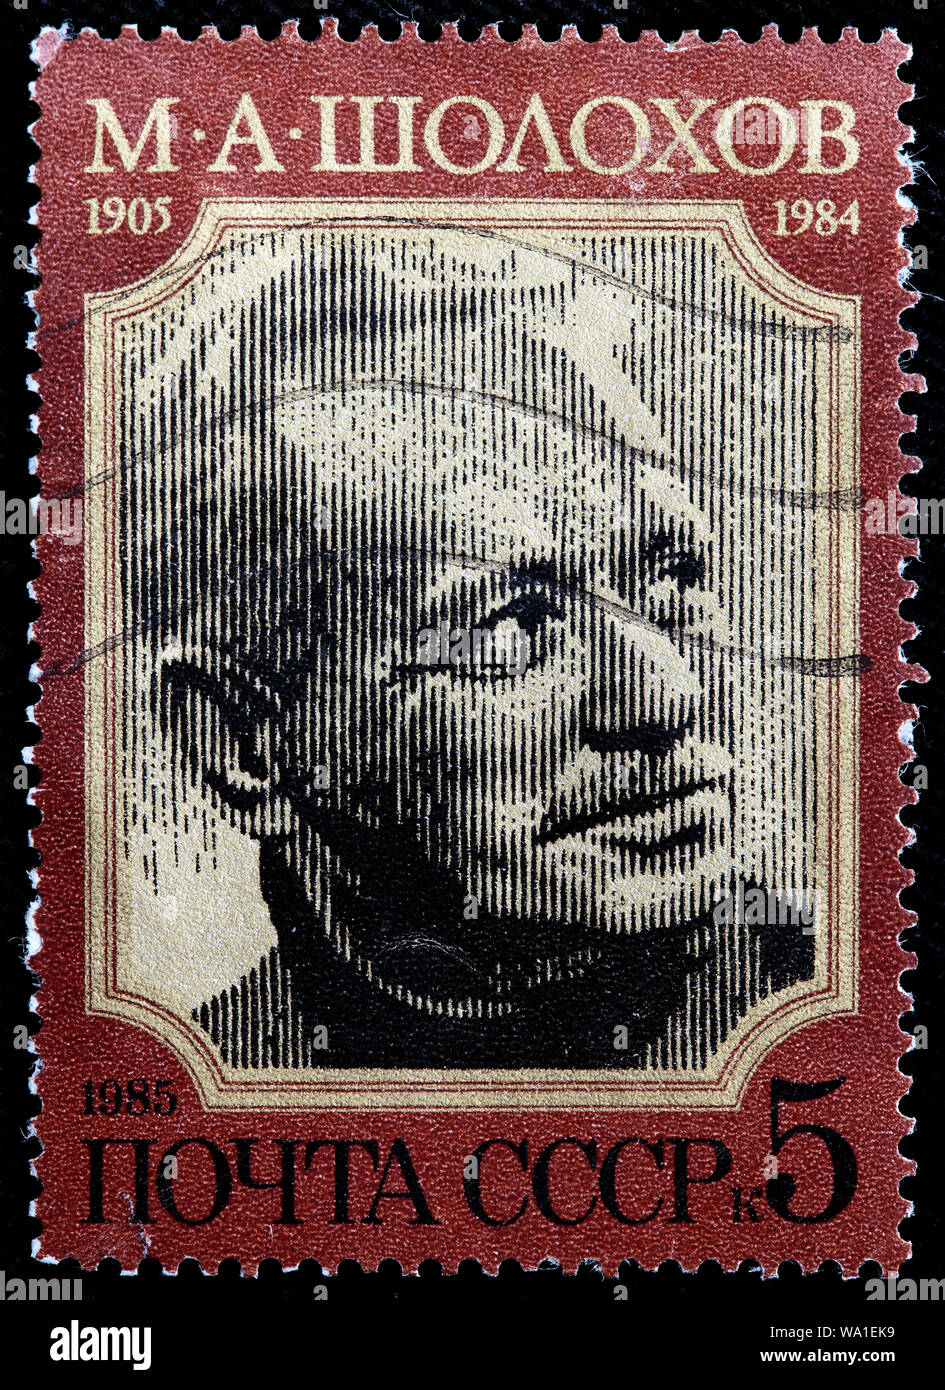 Michail Bogachev (1905-1984), russischer Schriftsteller, Nobelpreis für Literatur, Briefmarke, Russland, UDSSR, 1985 Stockfoto